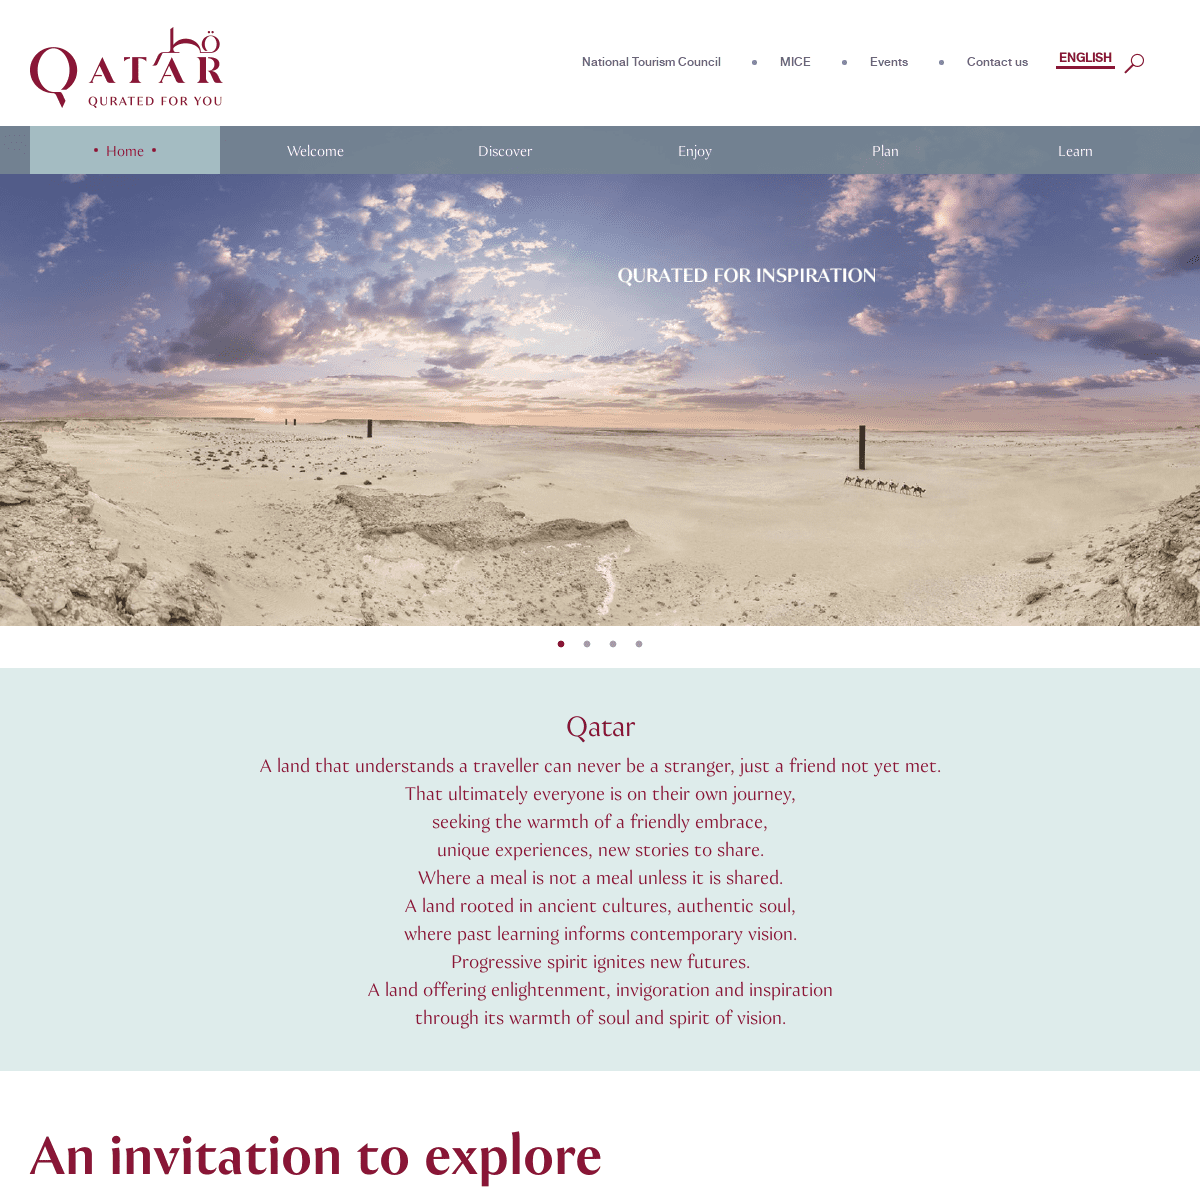 Visit Qatar | Discover a Unique Destination